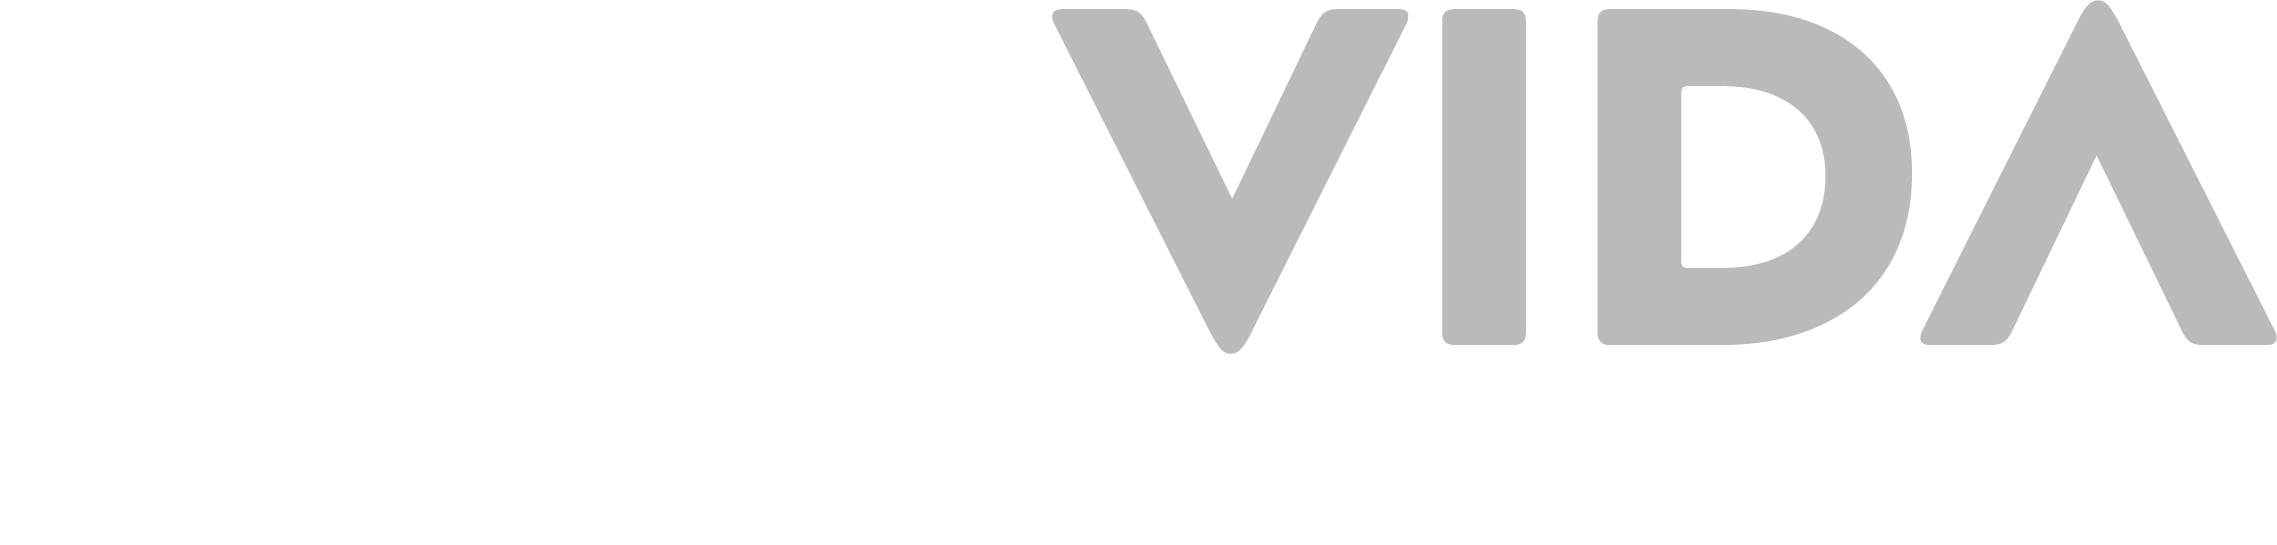 logo-otovida-white